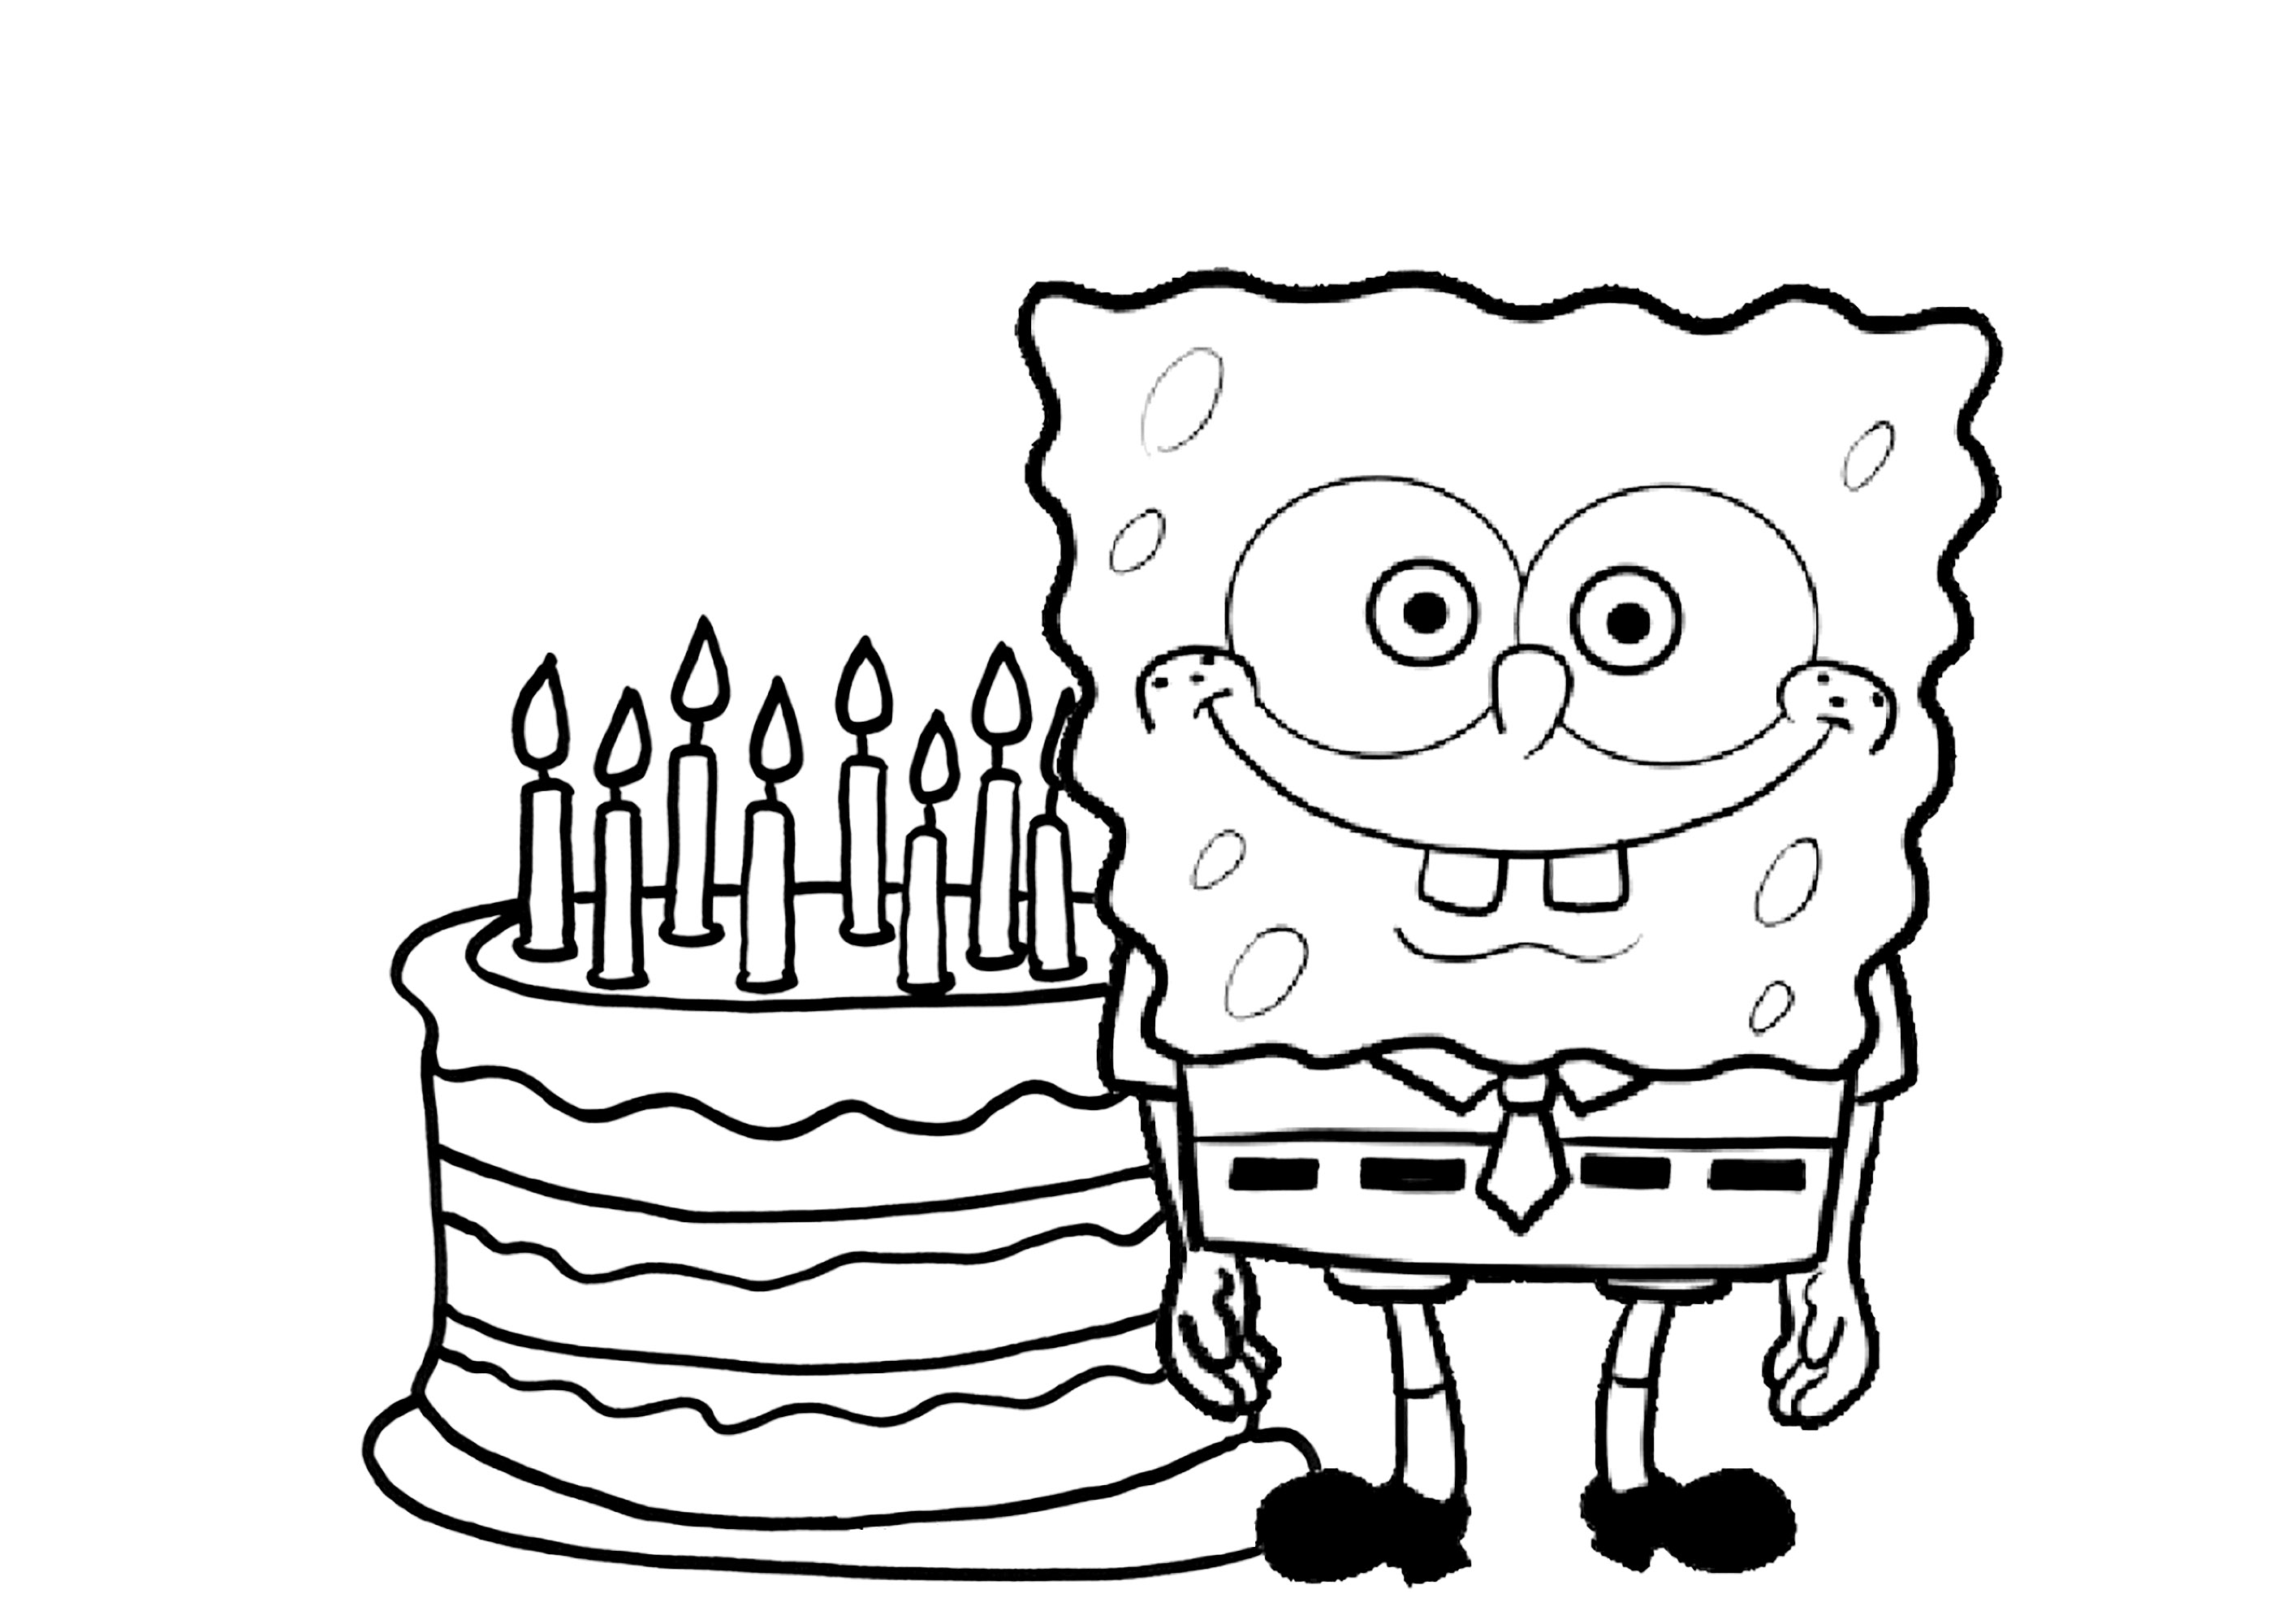 Es el cumpleaños de Bob Esponja. ¿Cuántos años tiene Bob? ¡Cuenta las velas!